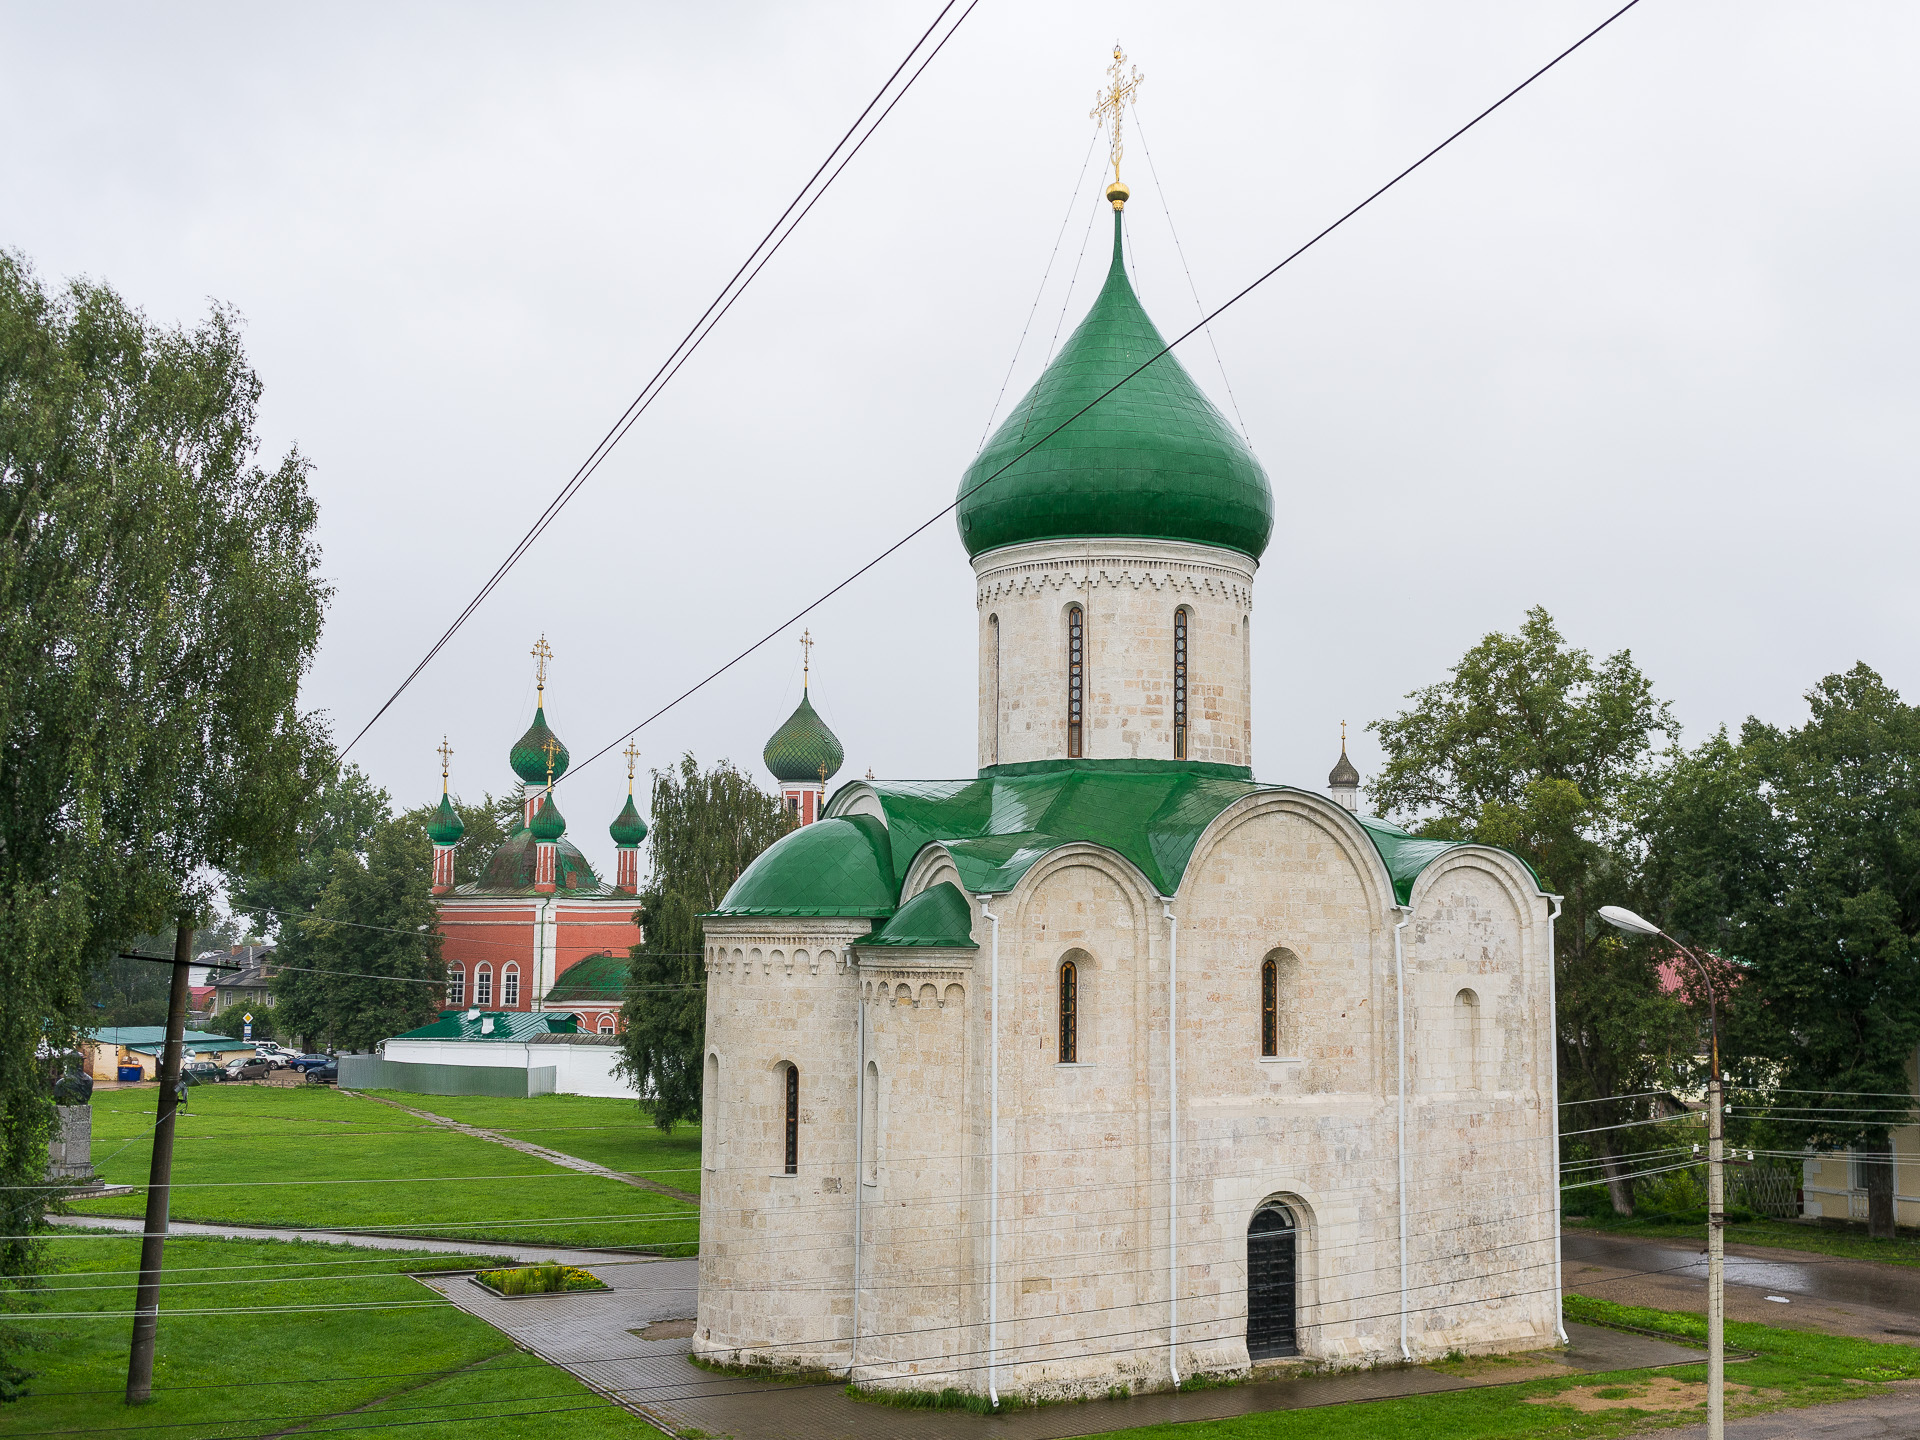 Pereslavl-Zalesski, Venäjän kultainen rengas